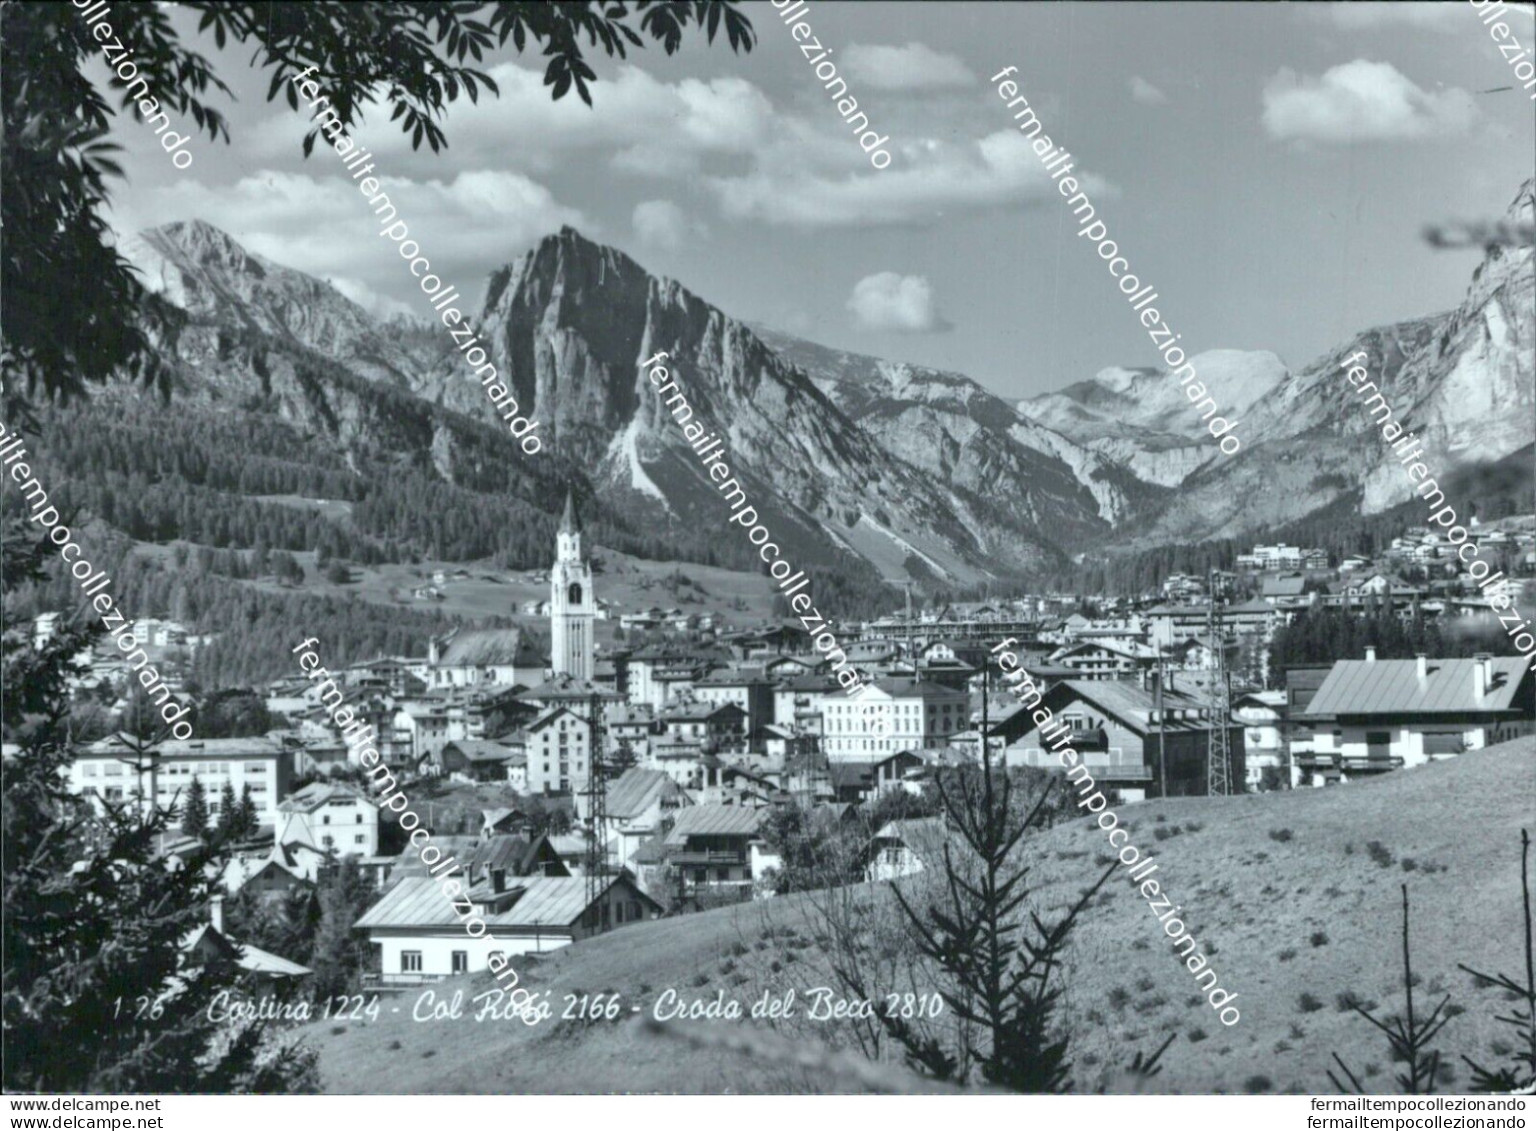 Bl529 Cartolina Cortina Col Rosa' Croda Del Beco Provincia Di Belluno - Belluno